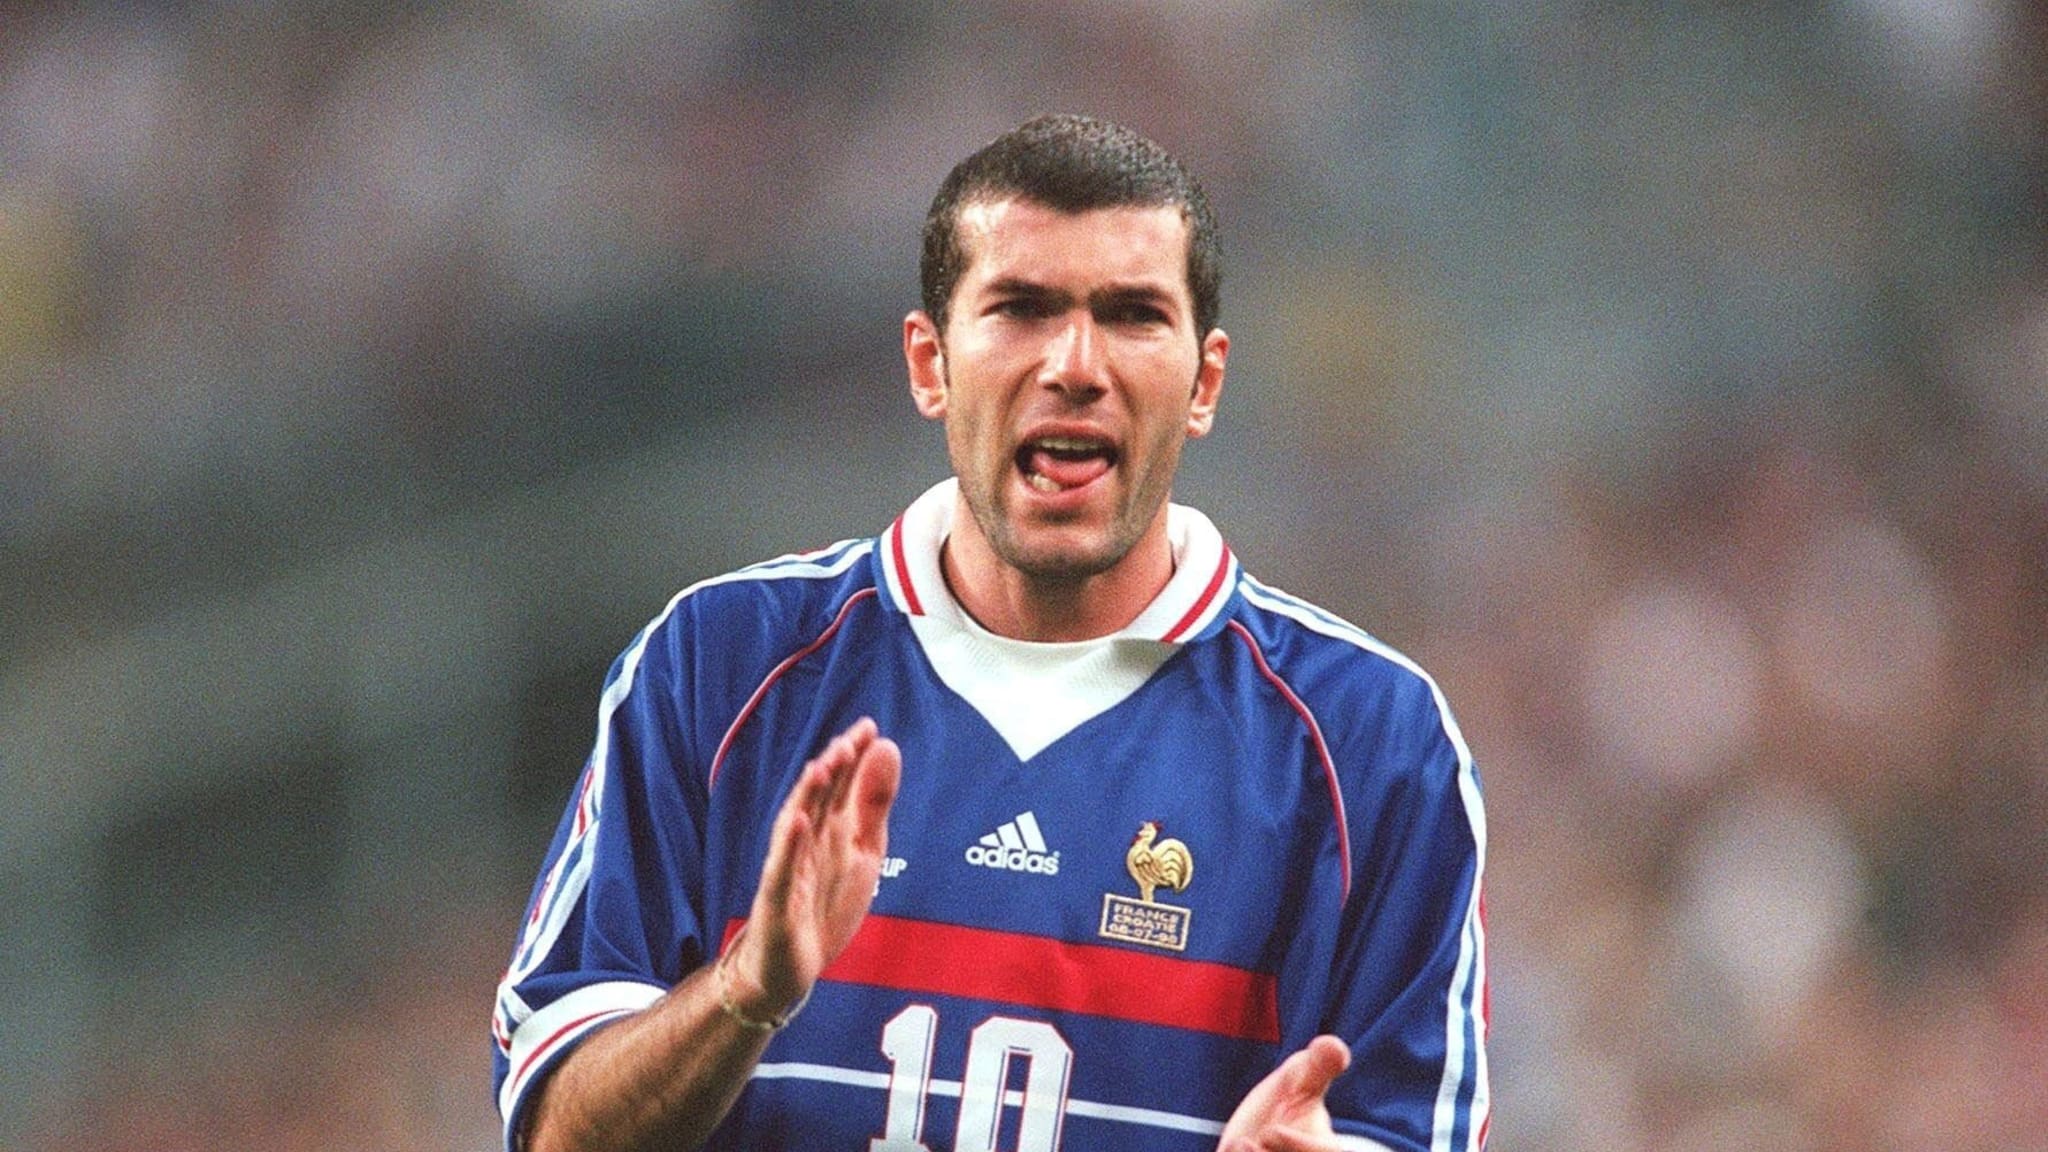 Tiểu sử về huyền thoại bóng đá, HLV tài ba người Pháp Zinedine Zidane